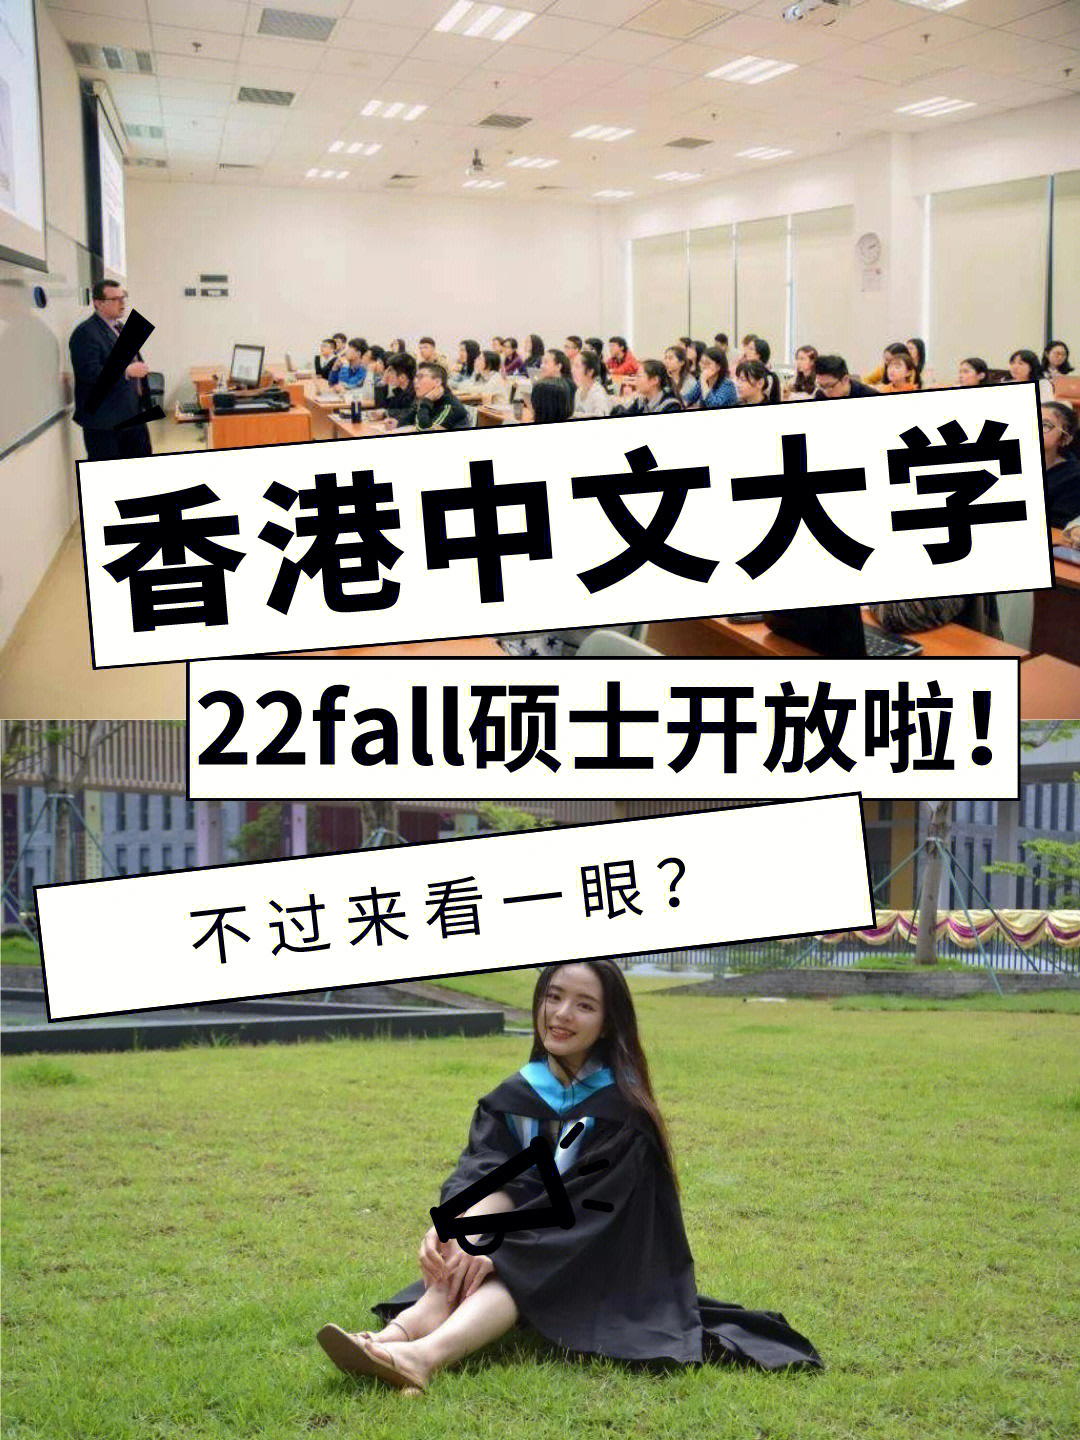 香港中文大学正式开放22fall申请!